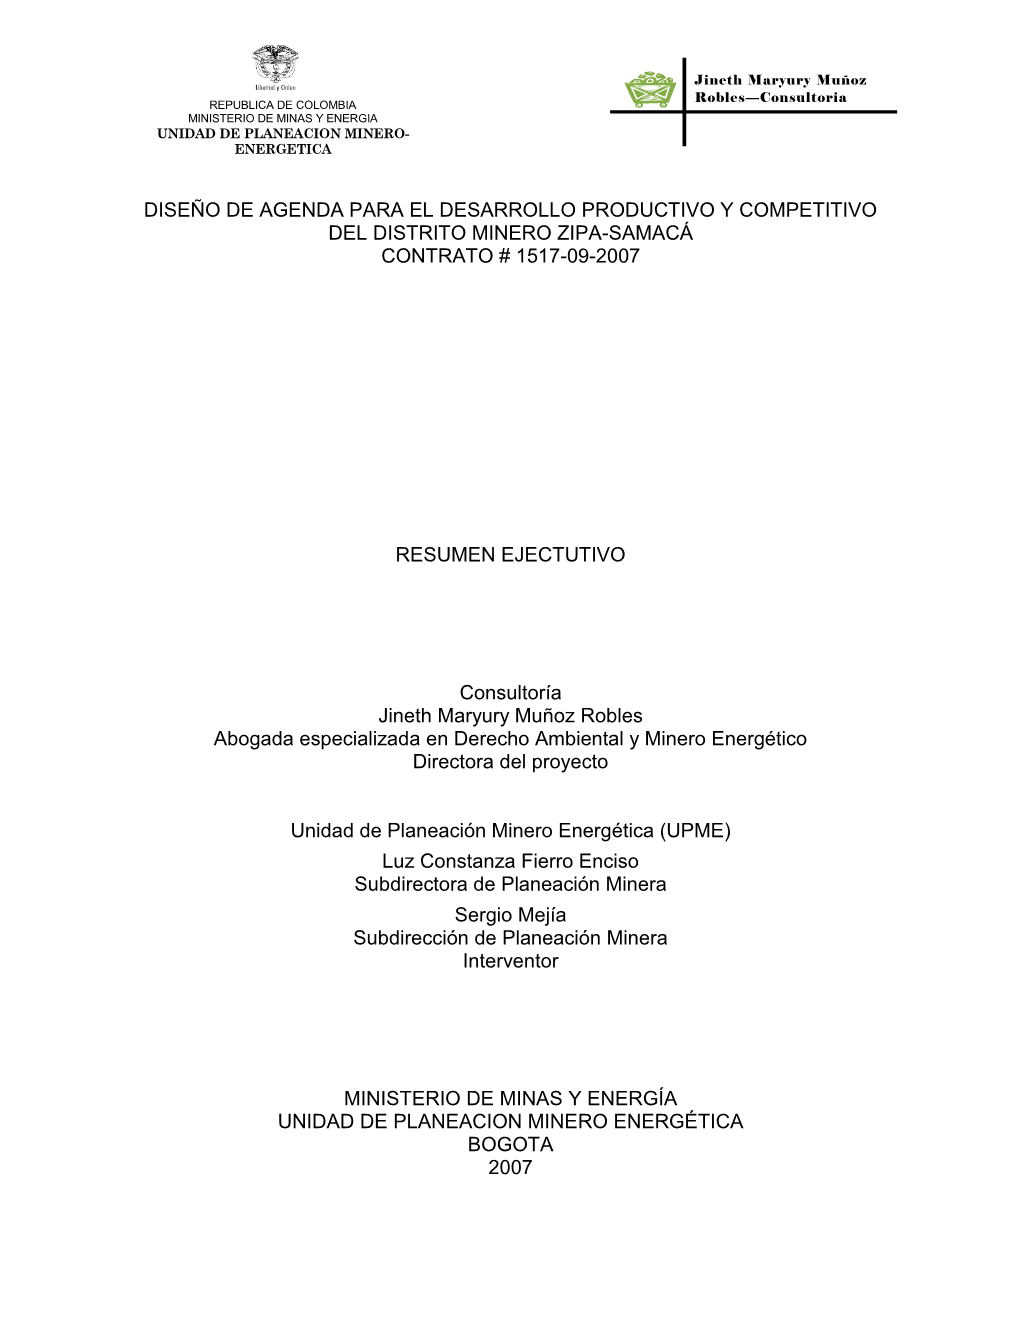 Resumen Ejecutivo Agenda De Competitividad Y Productividad Distrito Minero Zipa Samacá